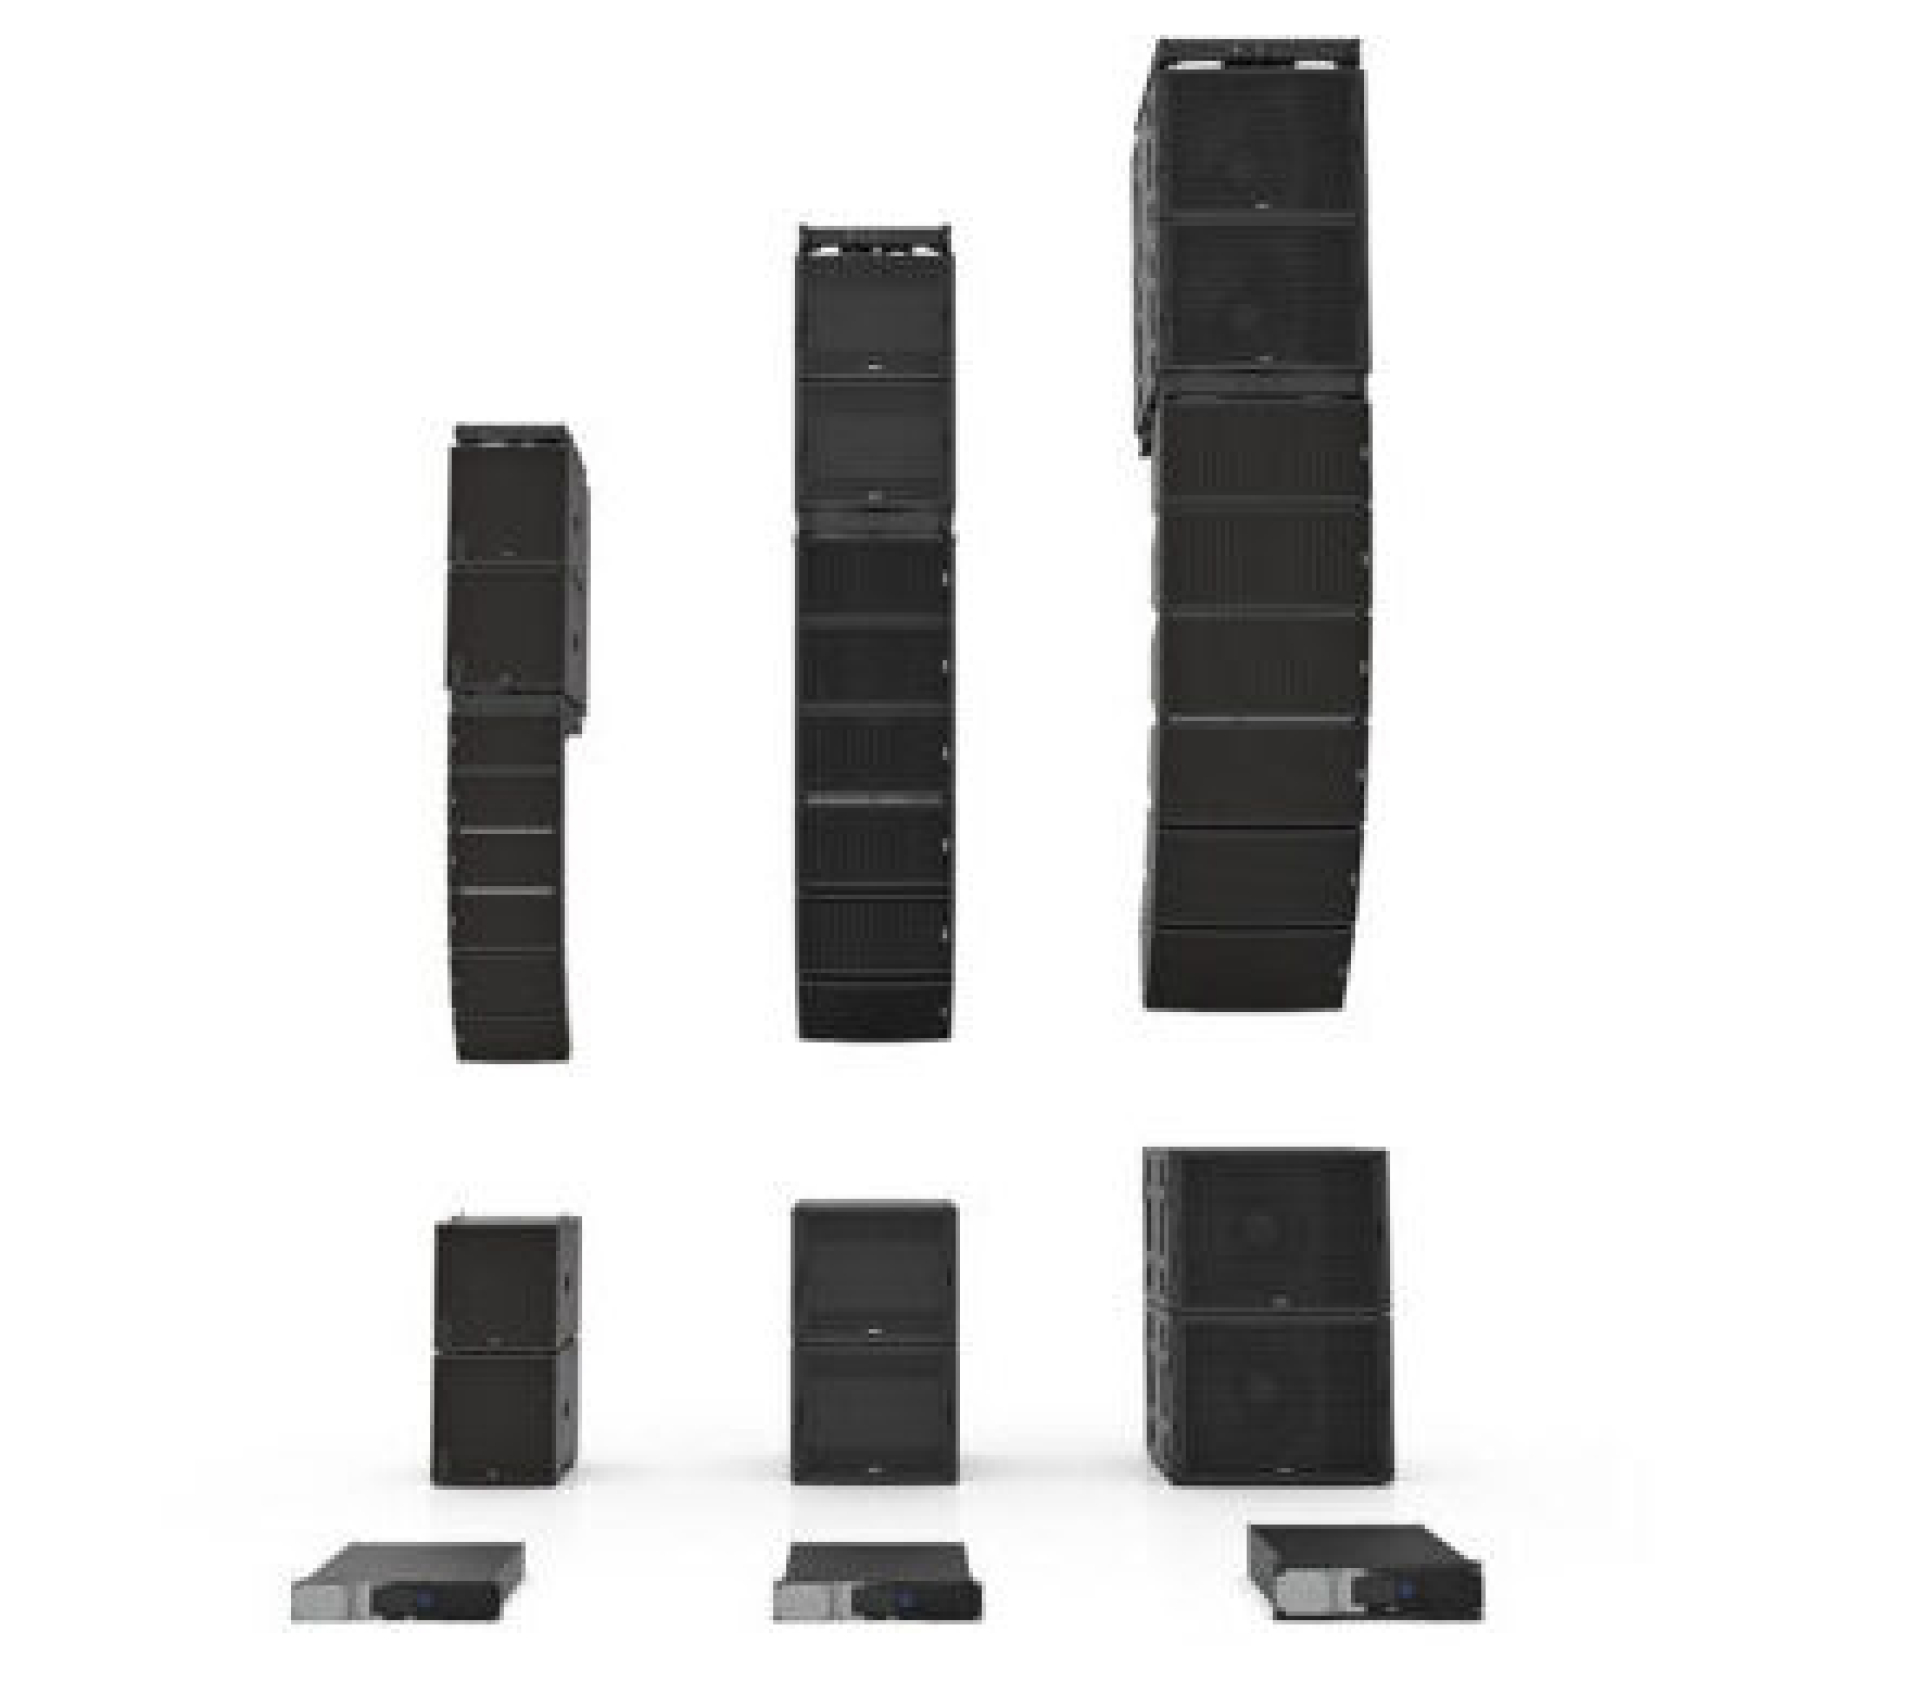 Nexo GEO M Series Speakers